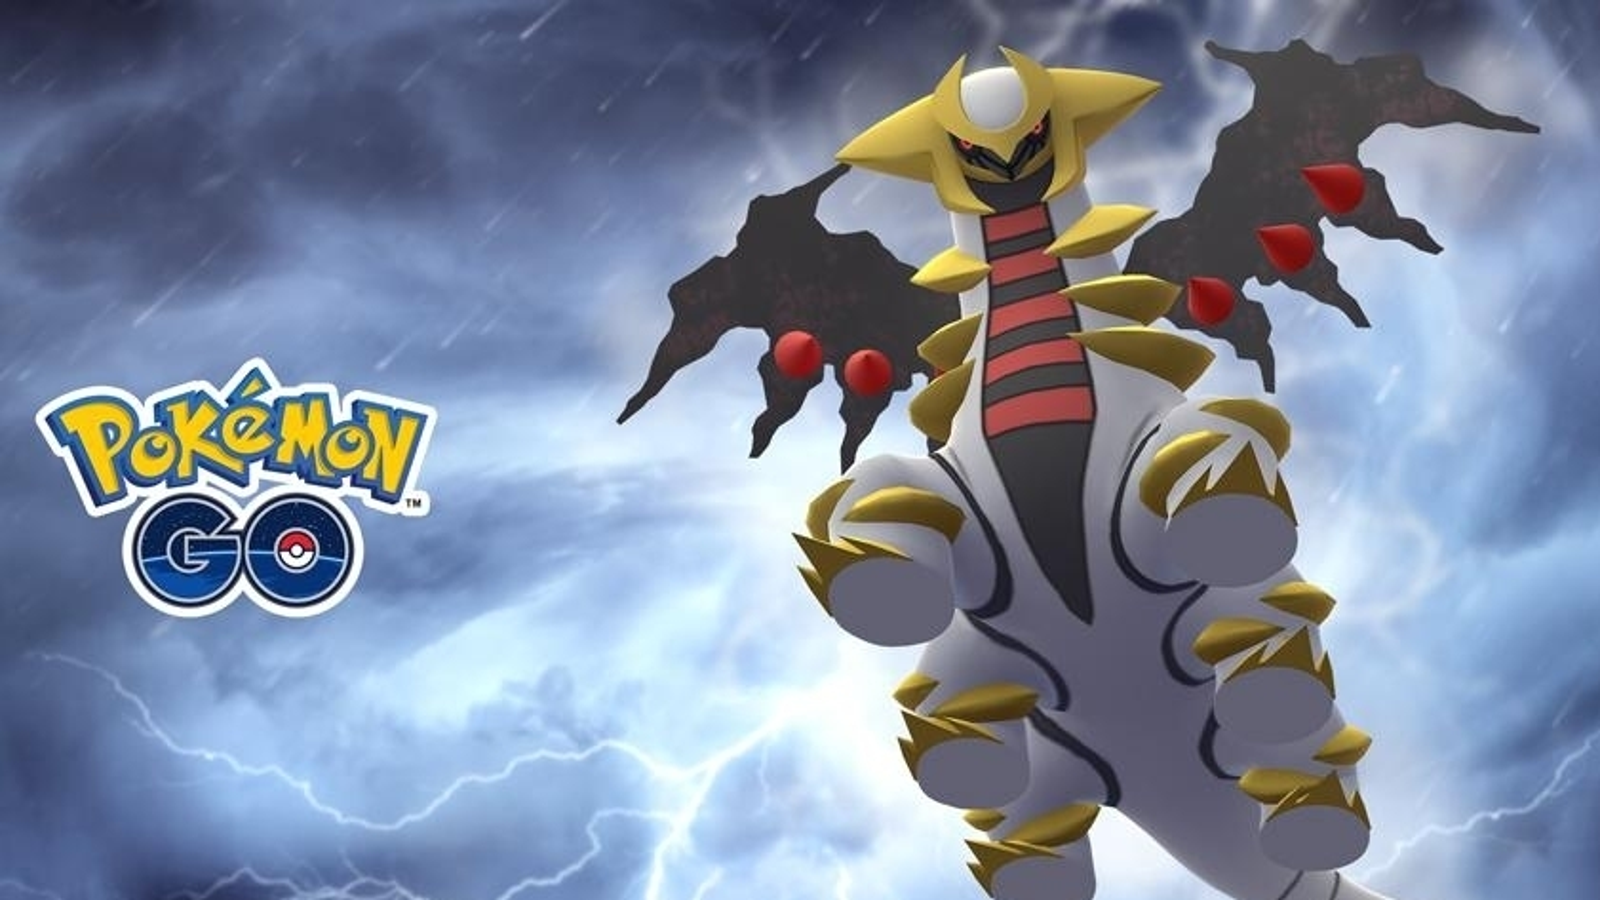 Jogada Excelente on X: Pokémon GO: Giratina Forma Alterada será o próximo  Chefe de Reides 5 Estrelas. Confira quais são os counters recomendados e se  prepare! ⠀ Data: 12/10 às 10h a